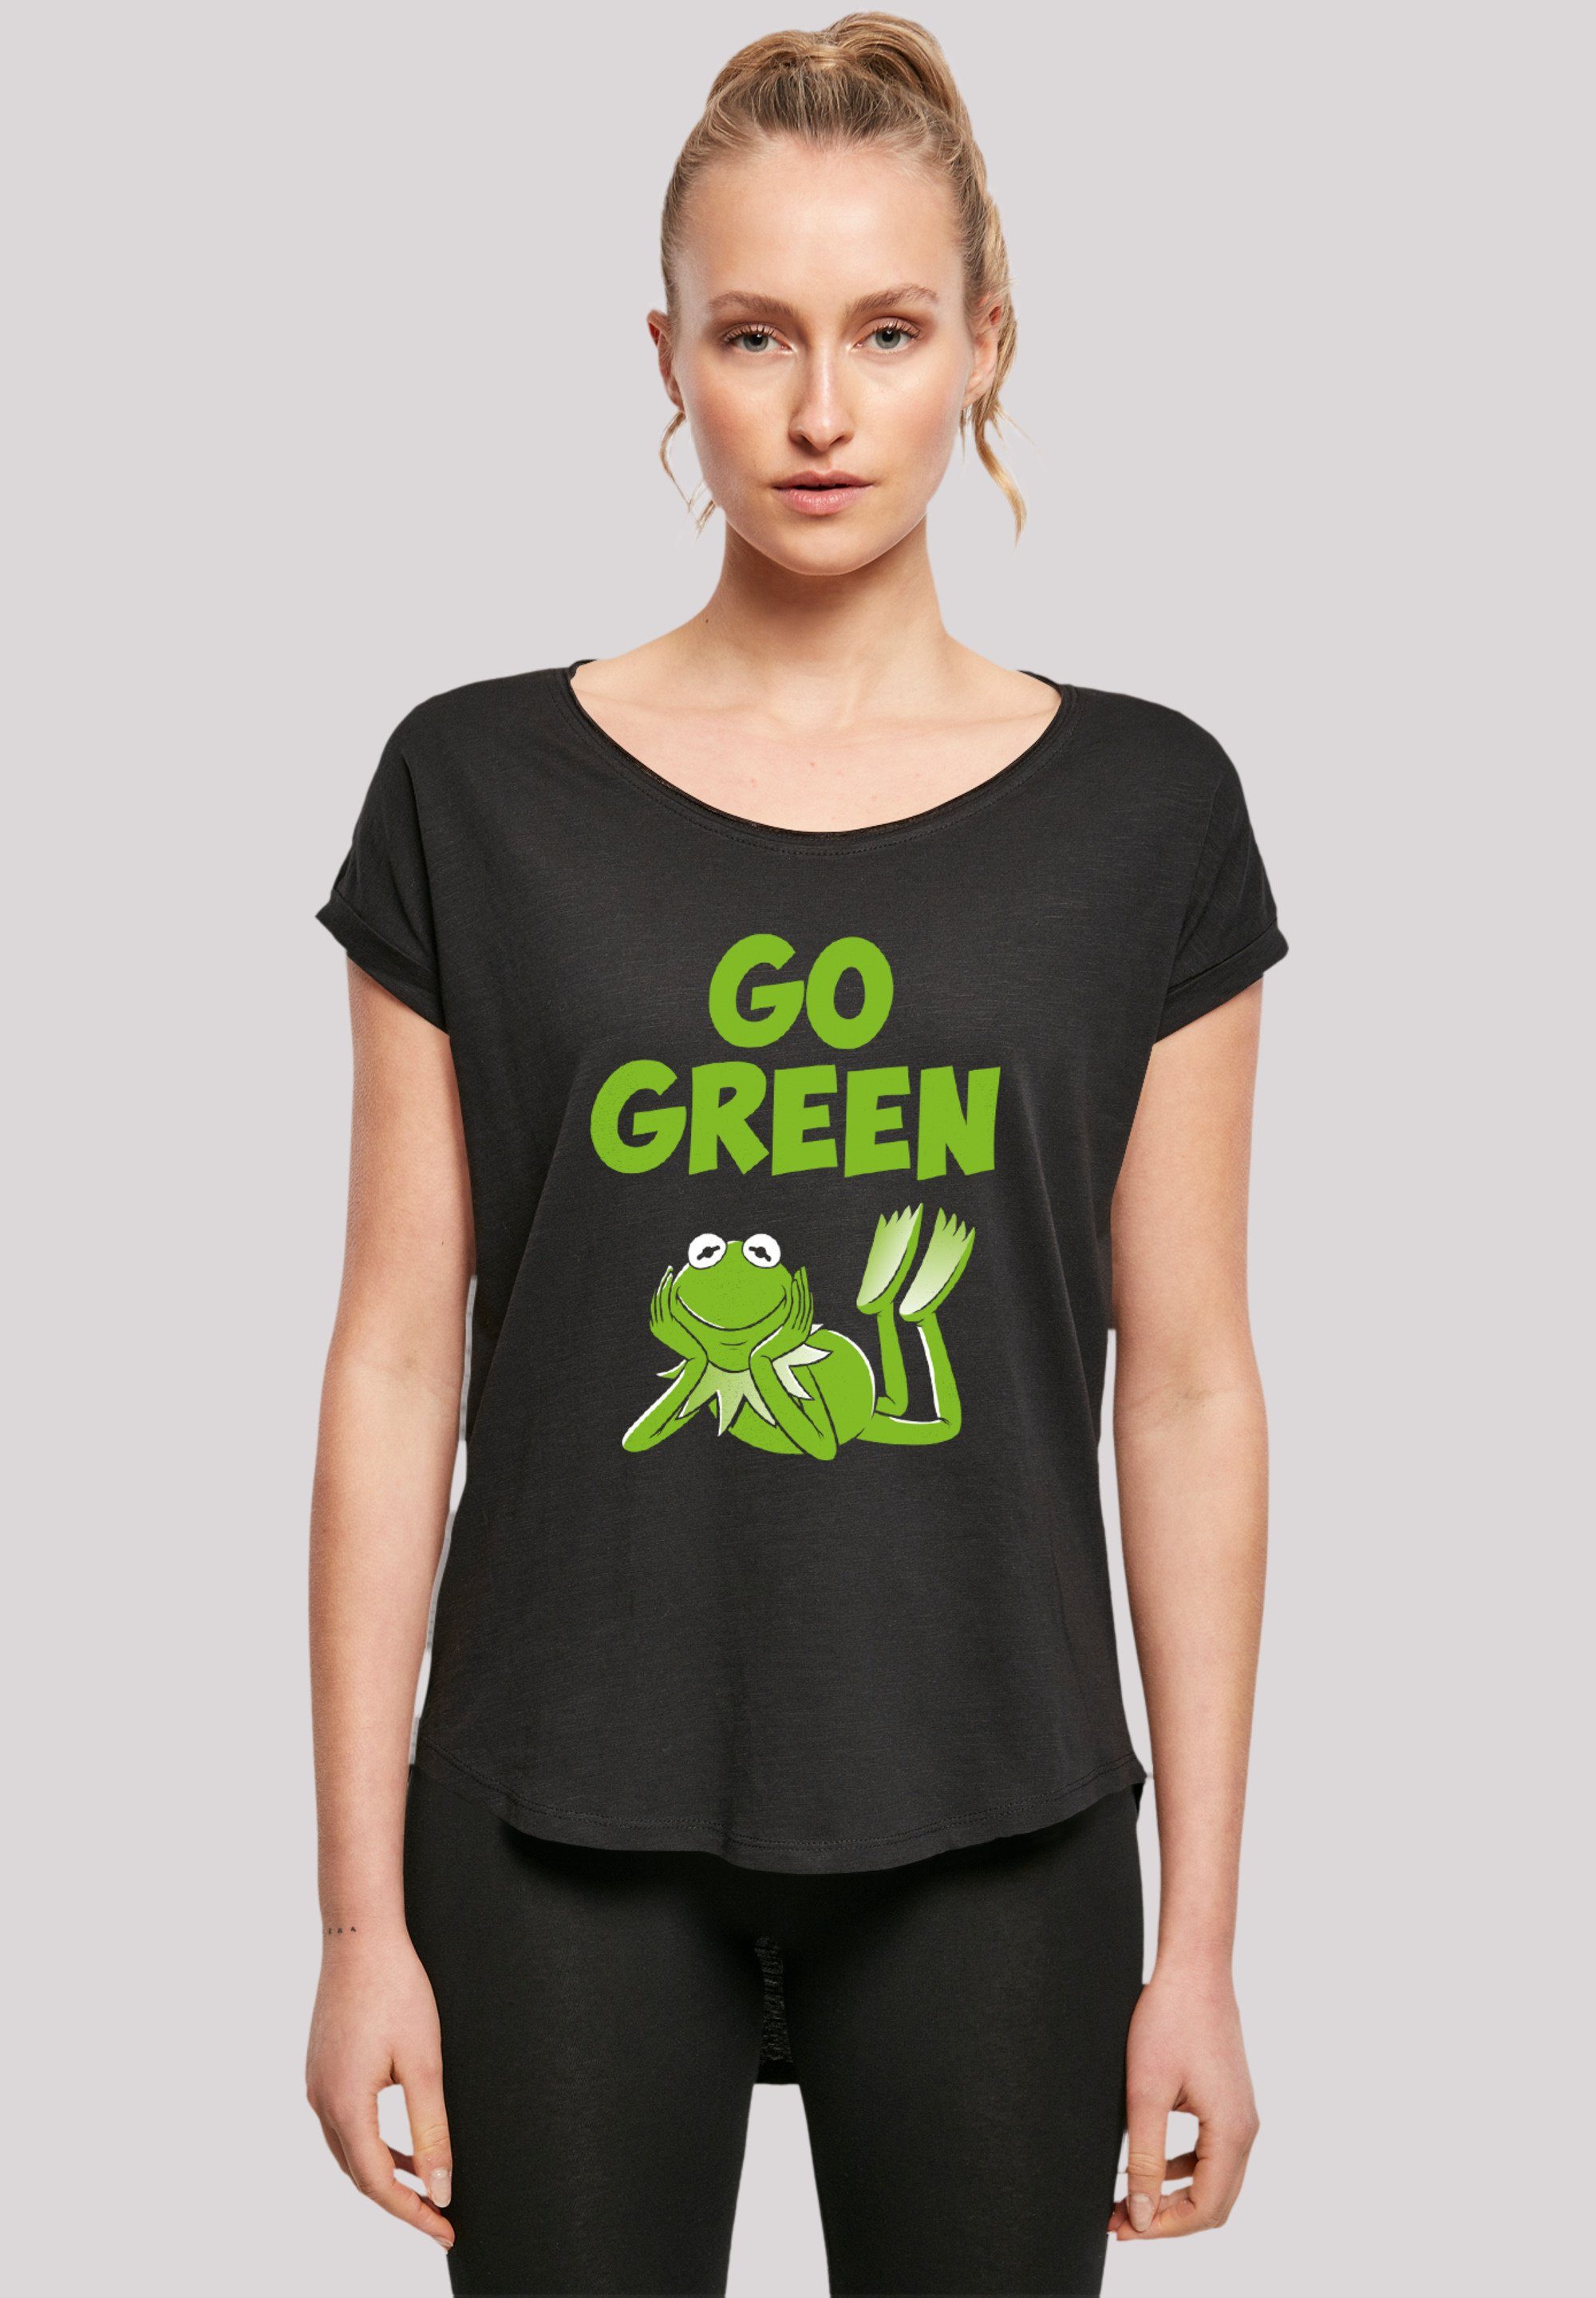 T-Shirt Damen Muppets Green extra geschnittenes T-Shirt F4NT4STIC Hinten Qualität, Go Premium Disney lang